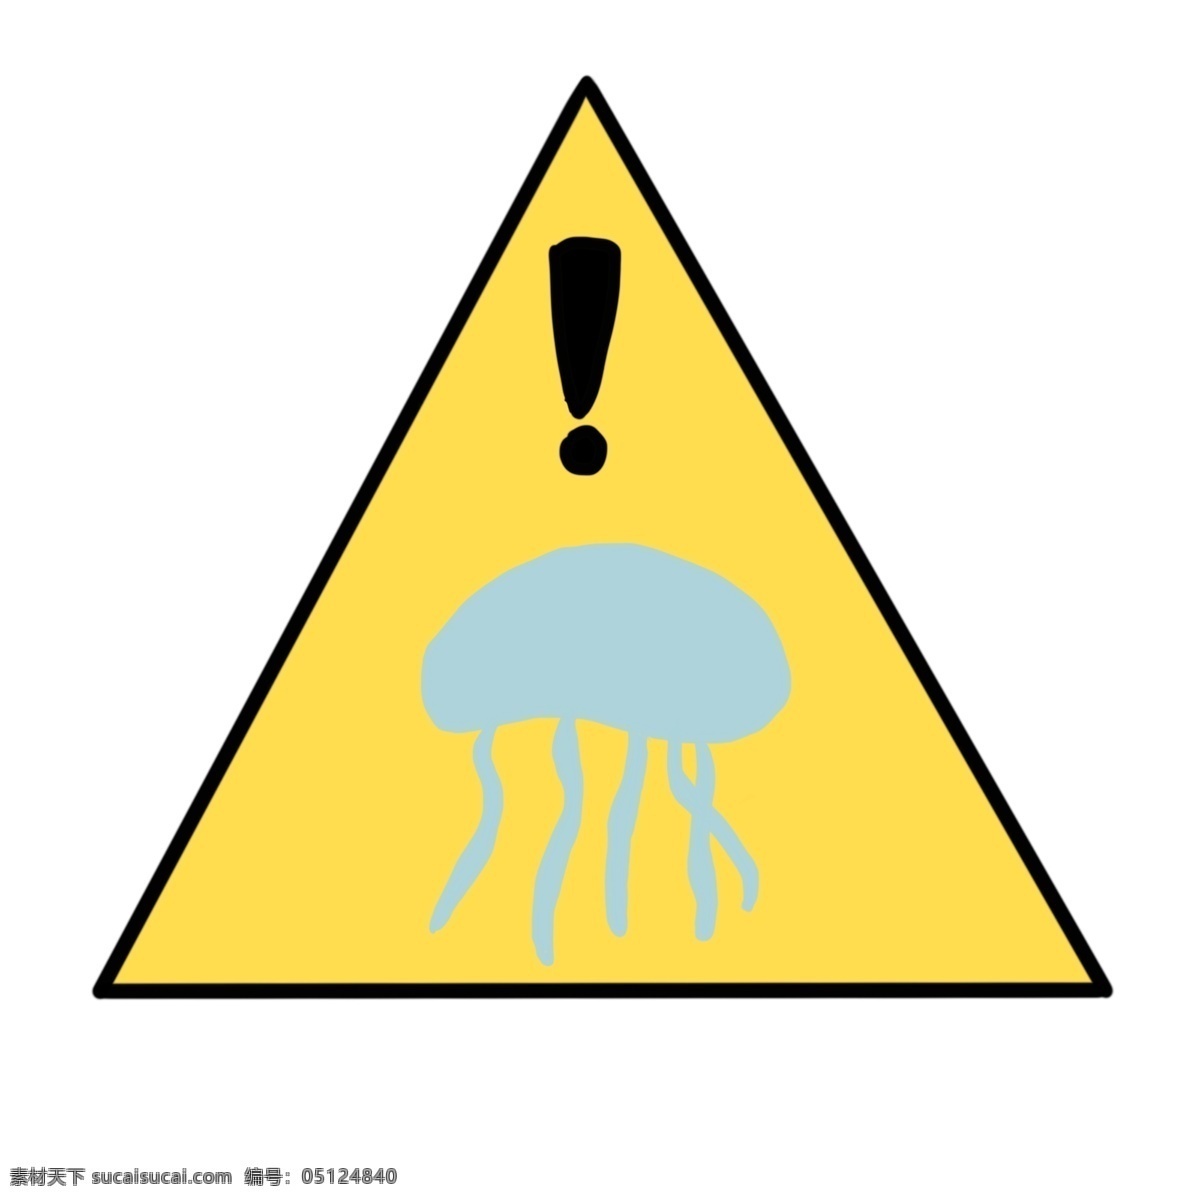 水母 出没 警示 图标 注意水母 卡通水母 蓝色水母 警示图标 注意图标 水母出没警示 插图